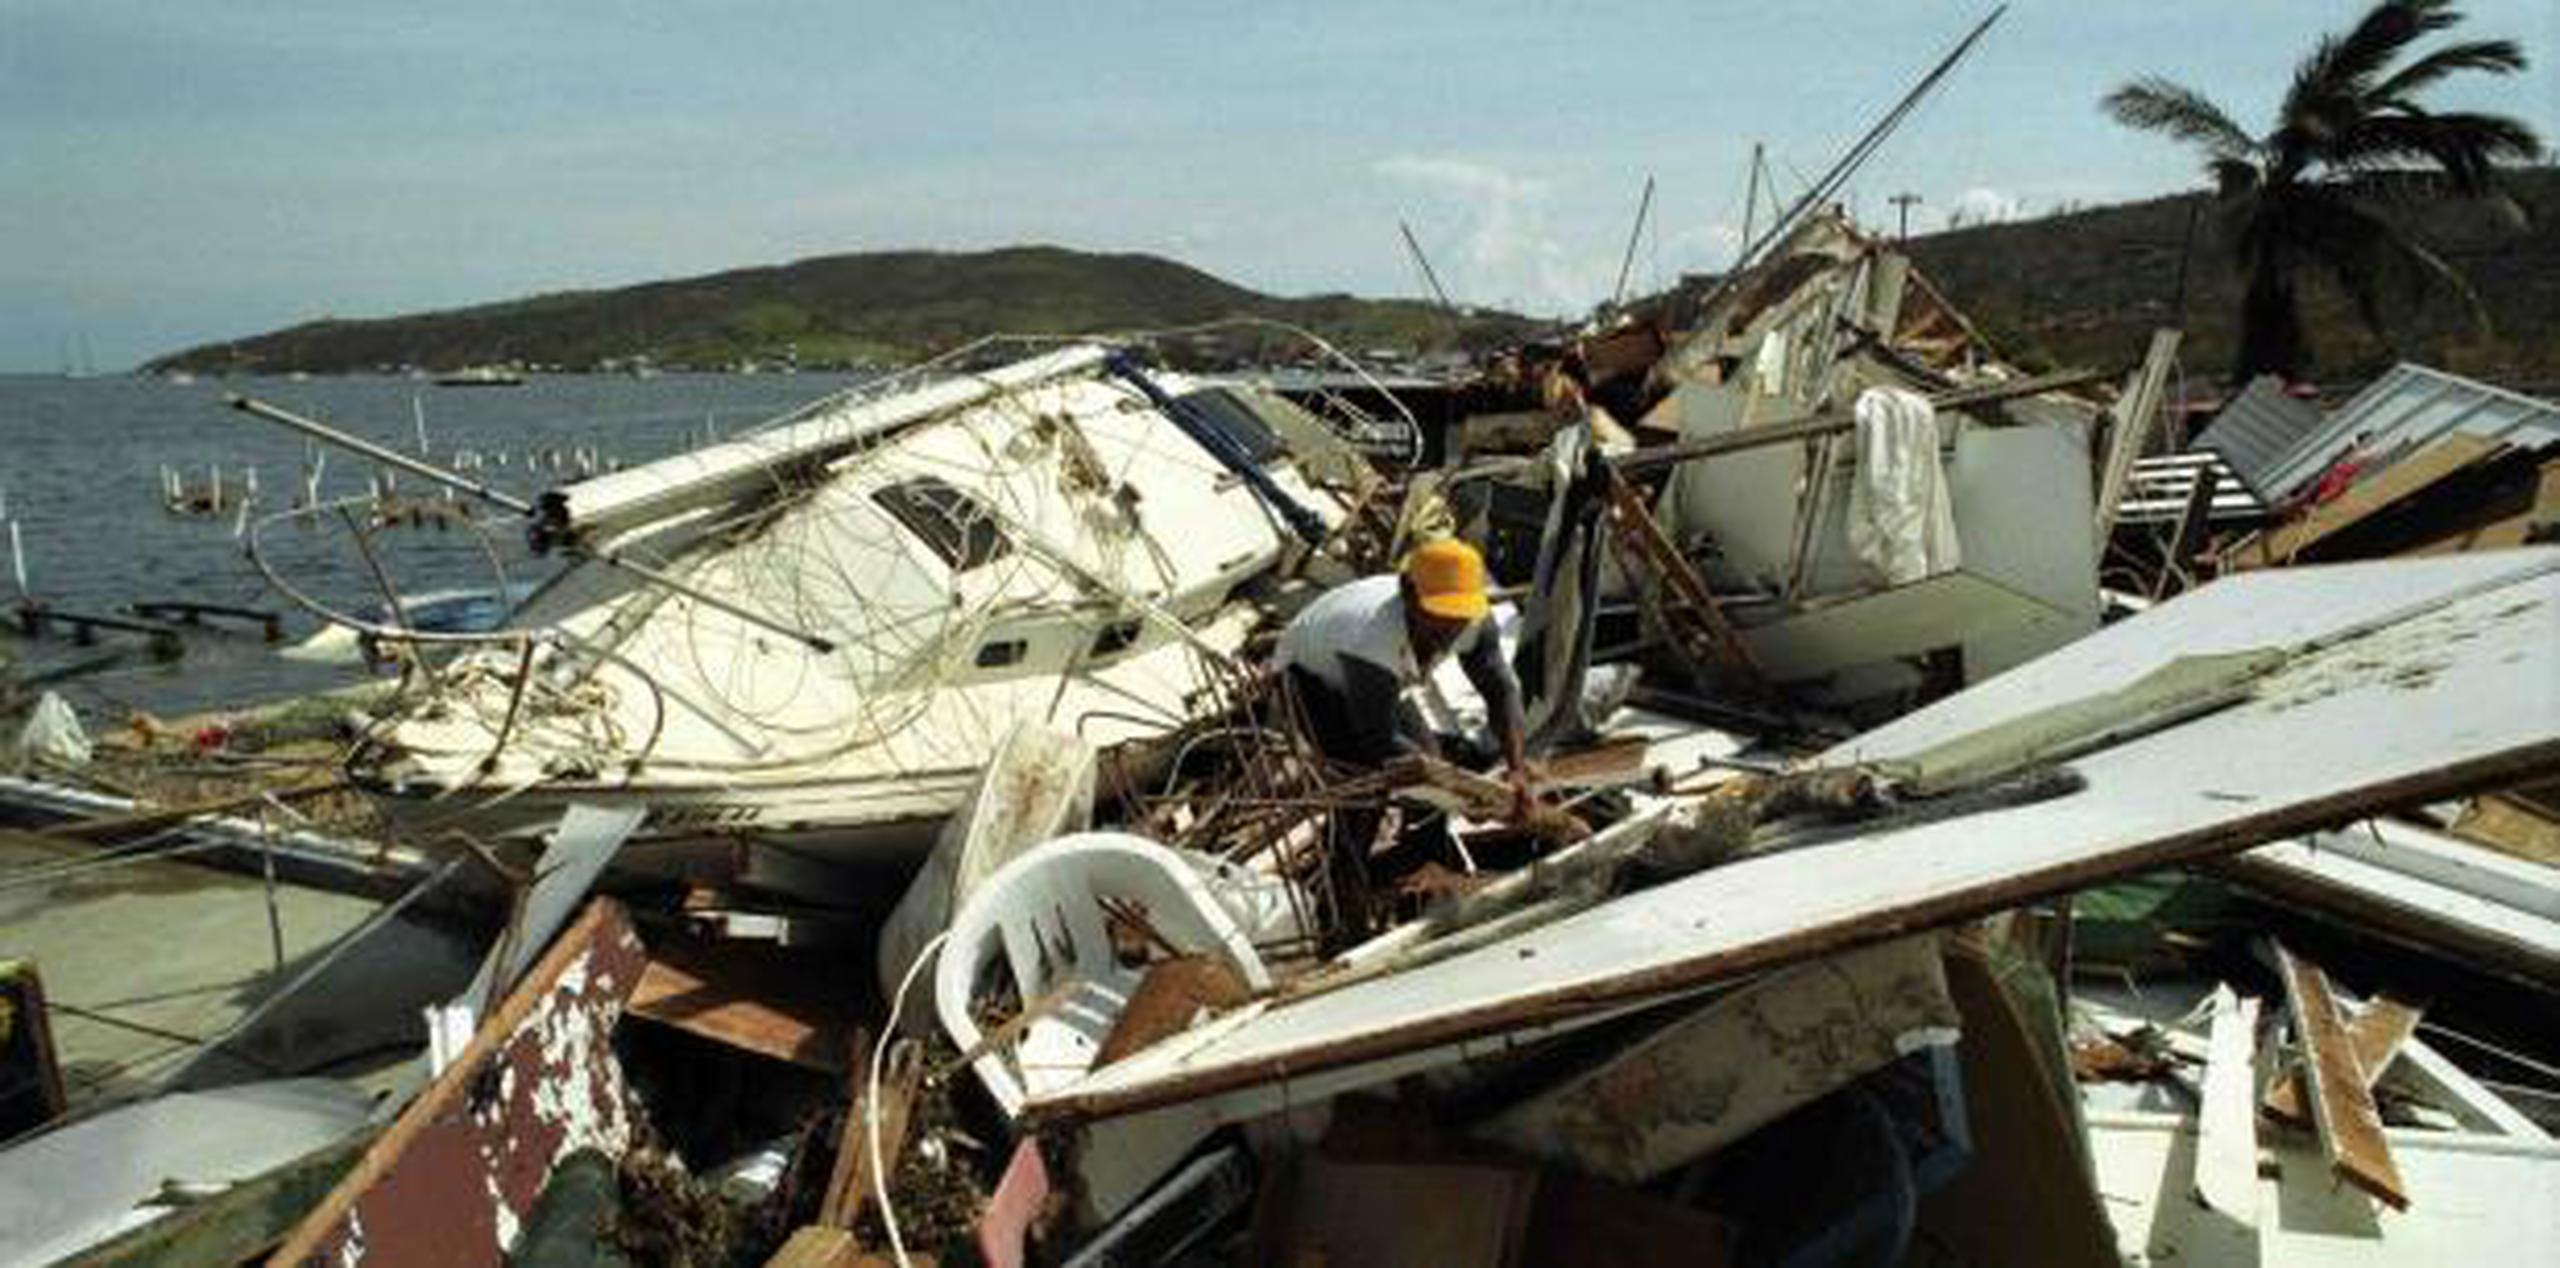 Imagen de Culebra tras el paso del huracán Hugo por la zona el 18 de septiembre de 1989.  (Archivo)